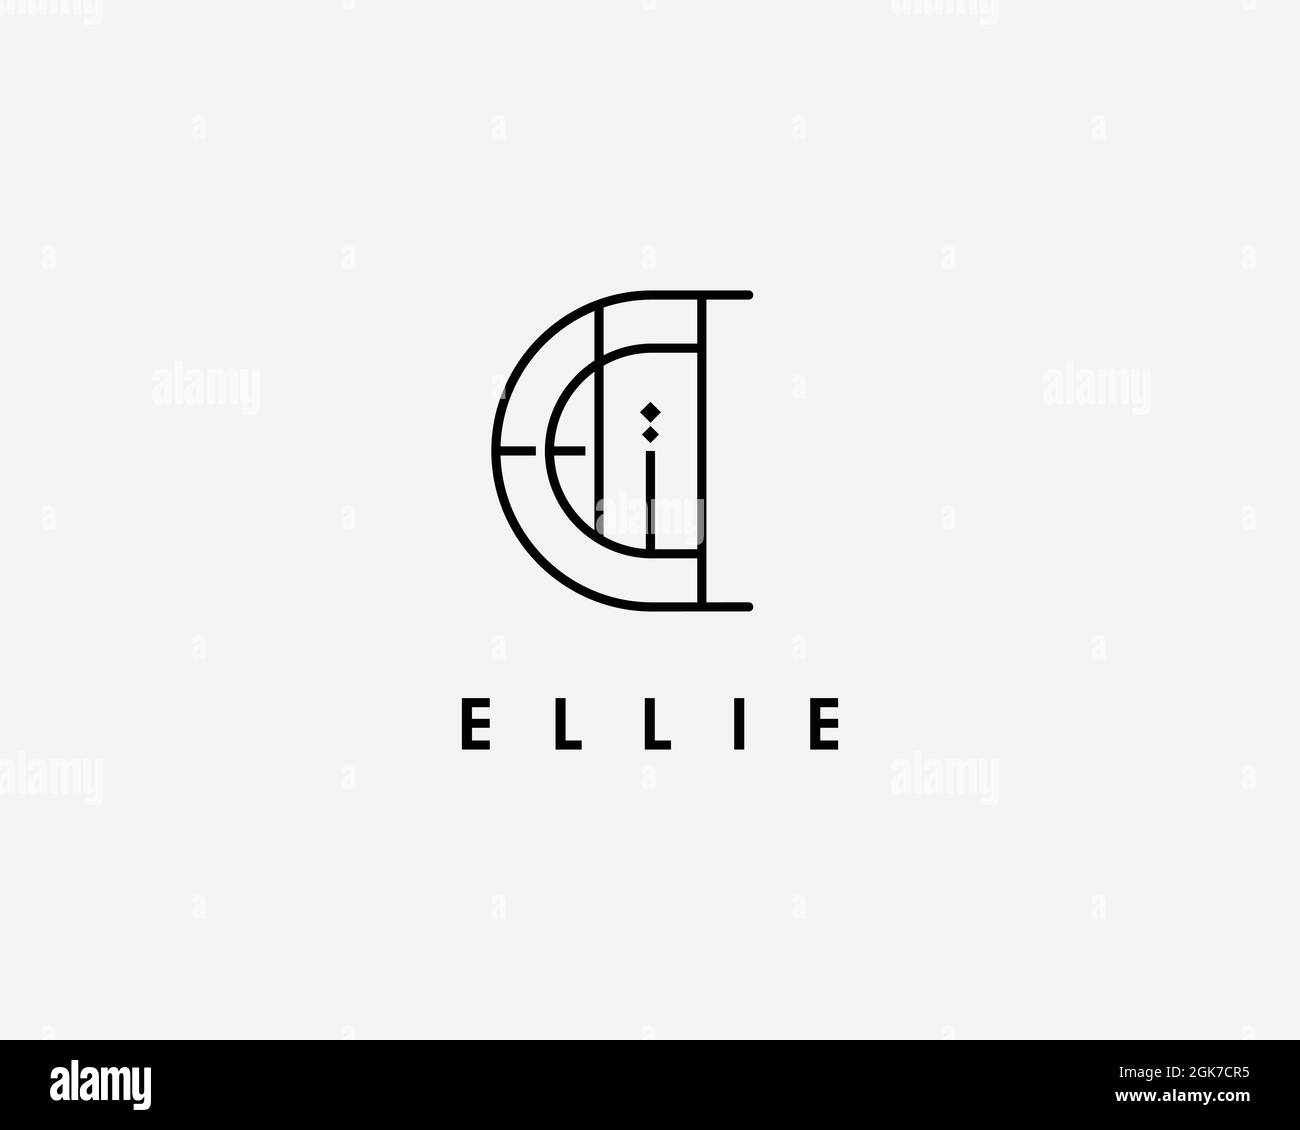 ,logo name Ellie usable logo design for private logo, business name card web icon, social media icon Stock Vector